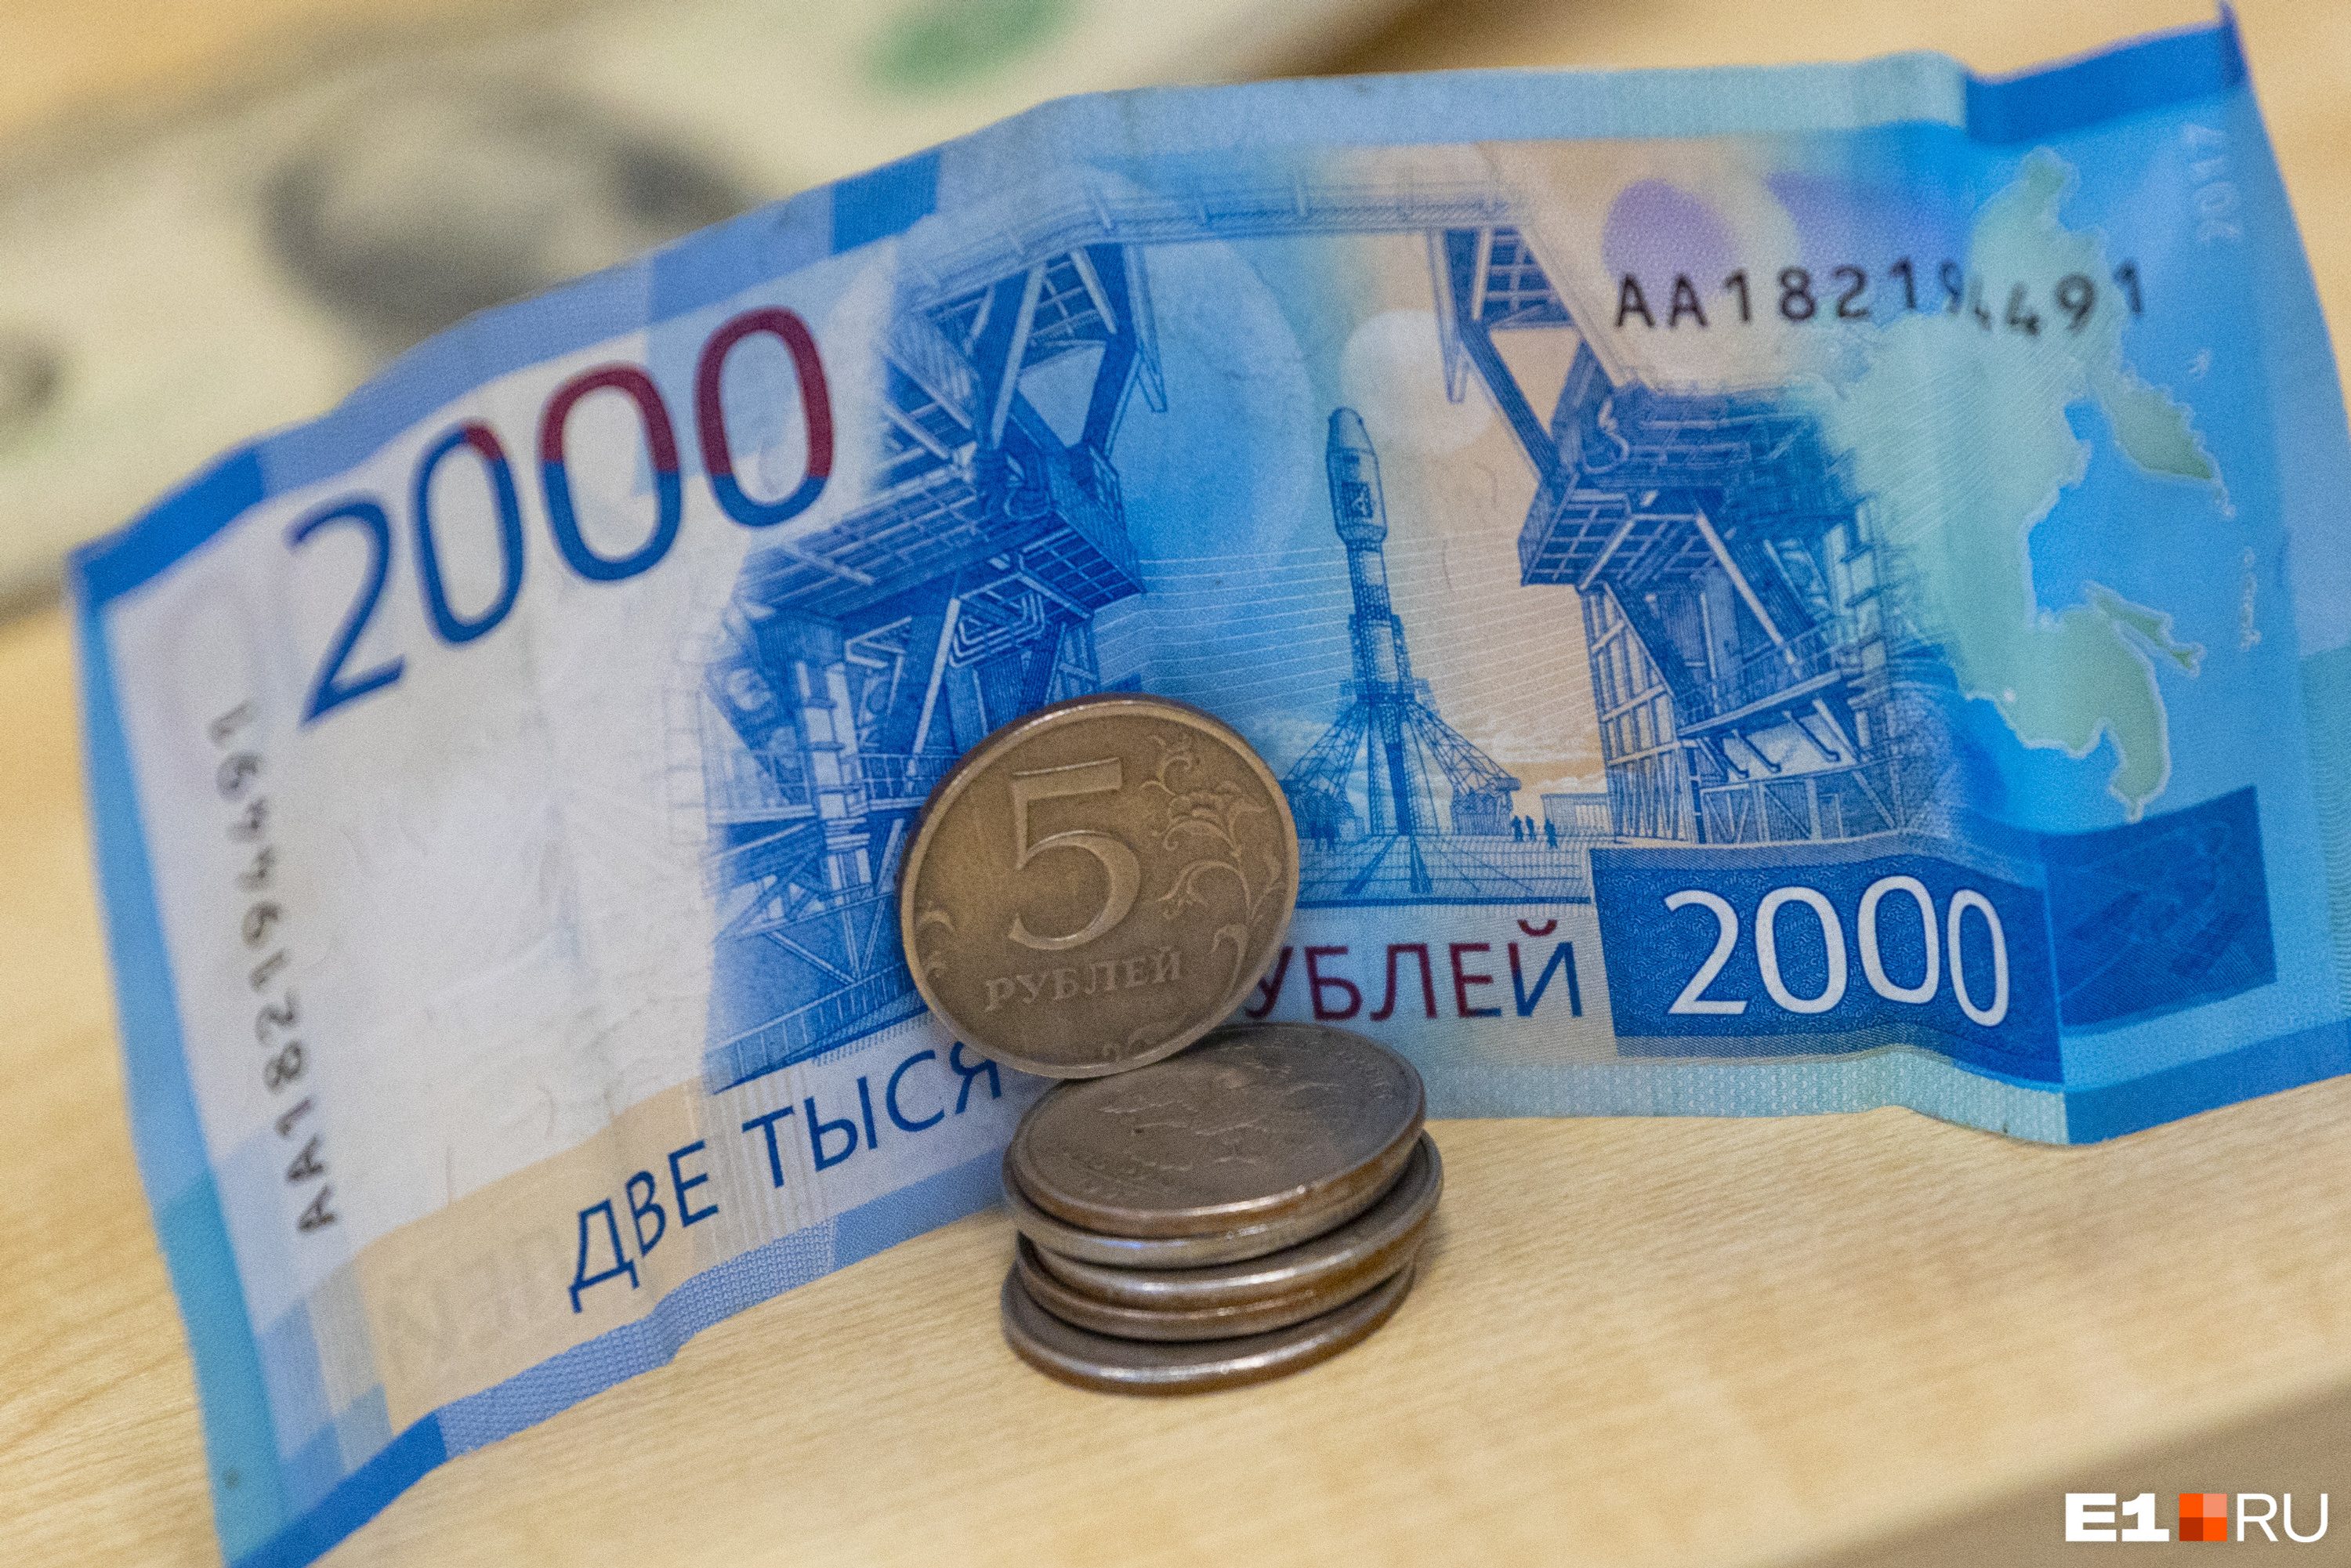 В Екатеринбурге кассир набрала кредитов и перевела мошенникам. А потом заплатила еще и «налог» за обман